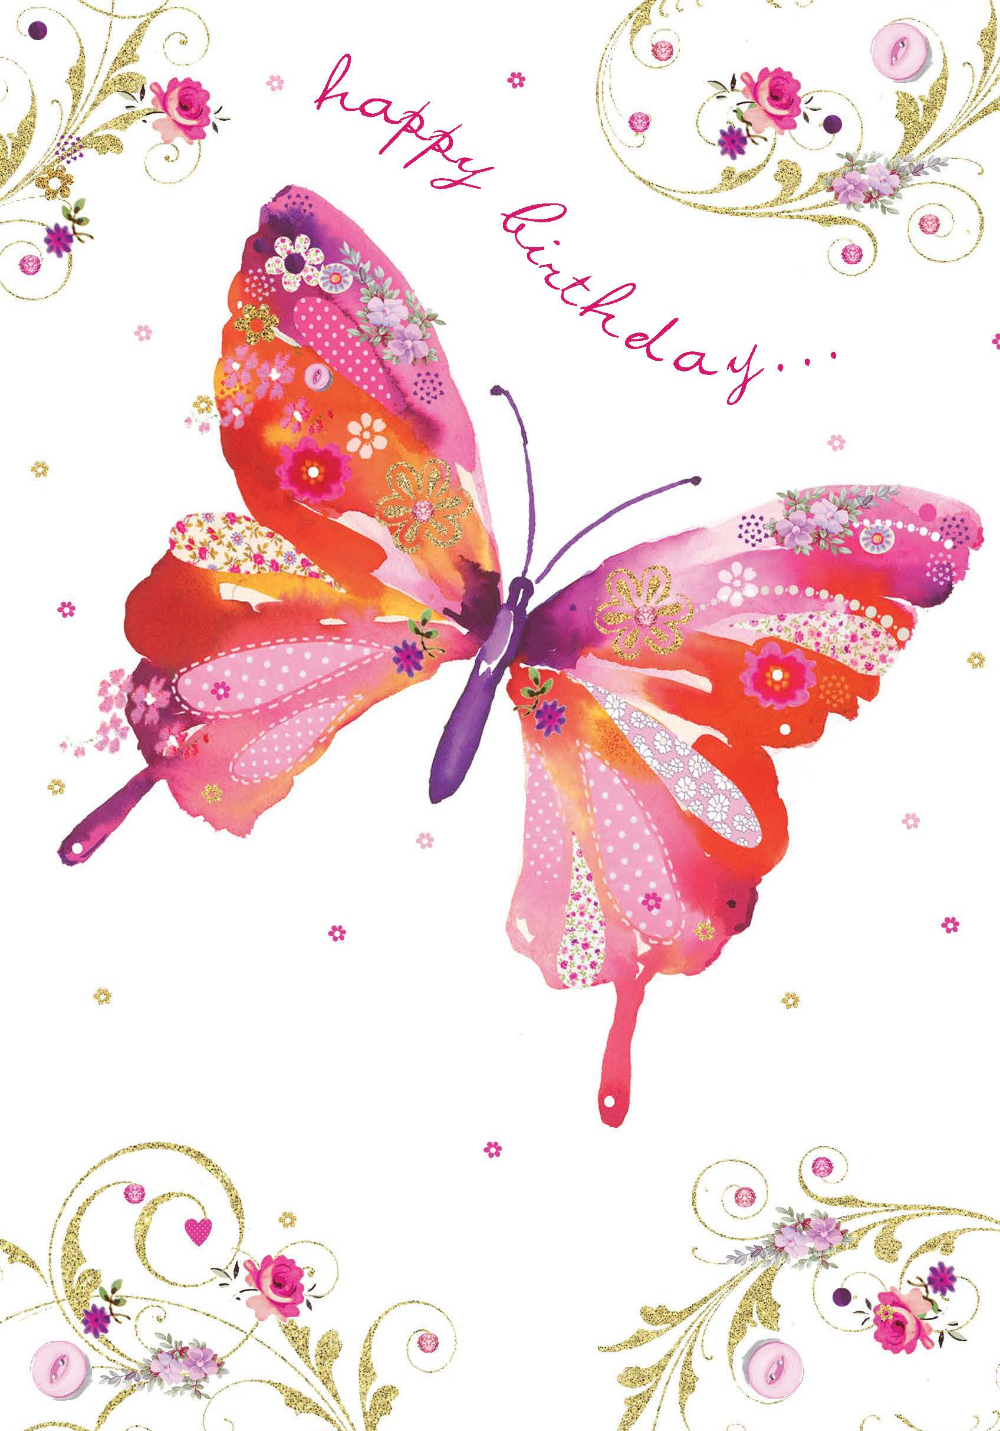 Поздравления с днём рождения с бабочками. Модные открытки. Красивые стильные открытки. Открытки с днём рождения с бабочками. Красивые открытки бабочками